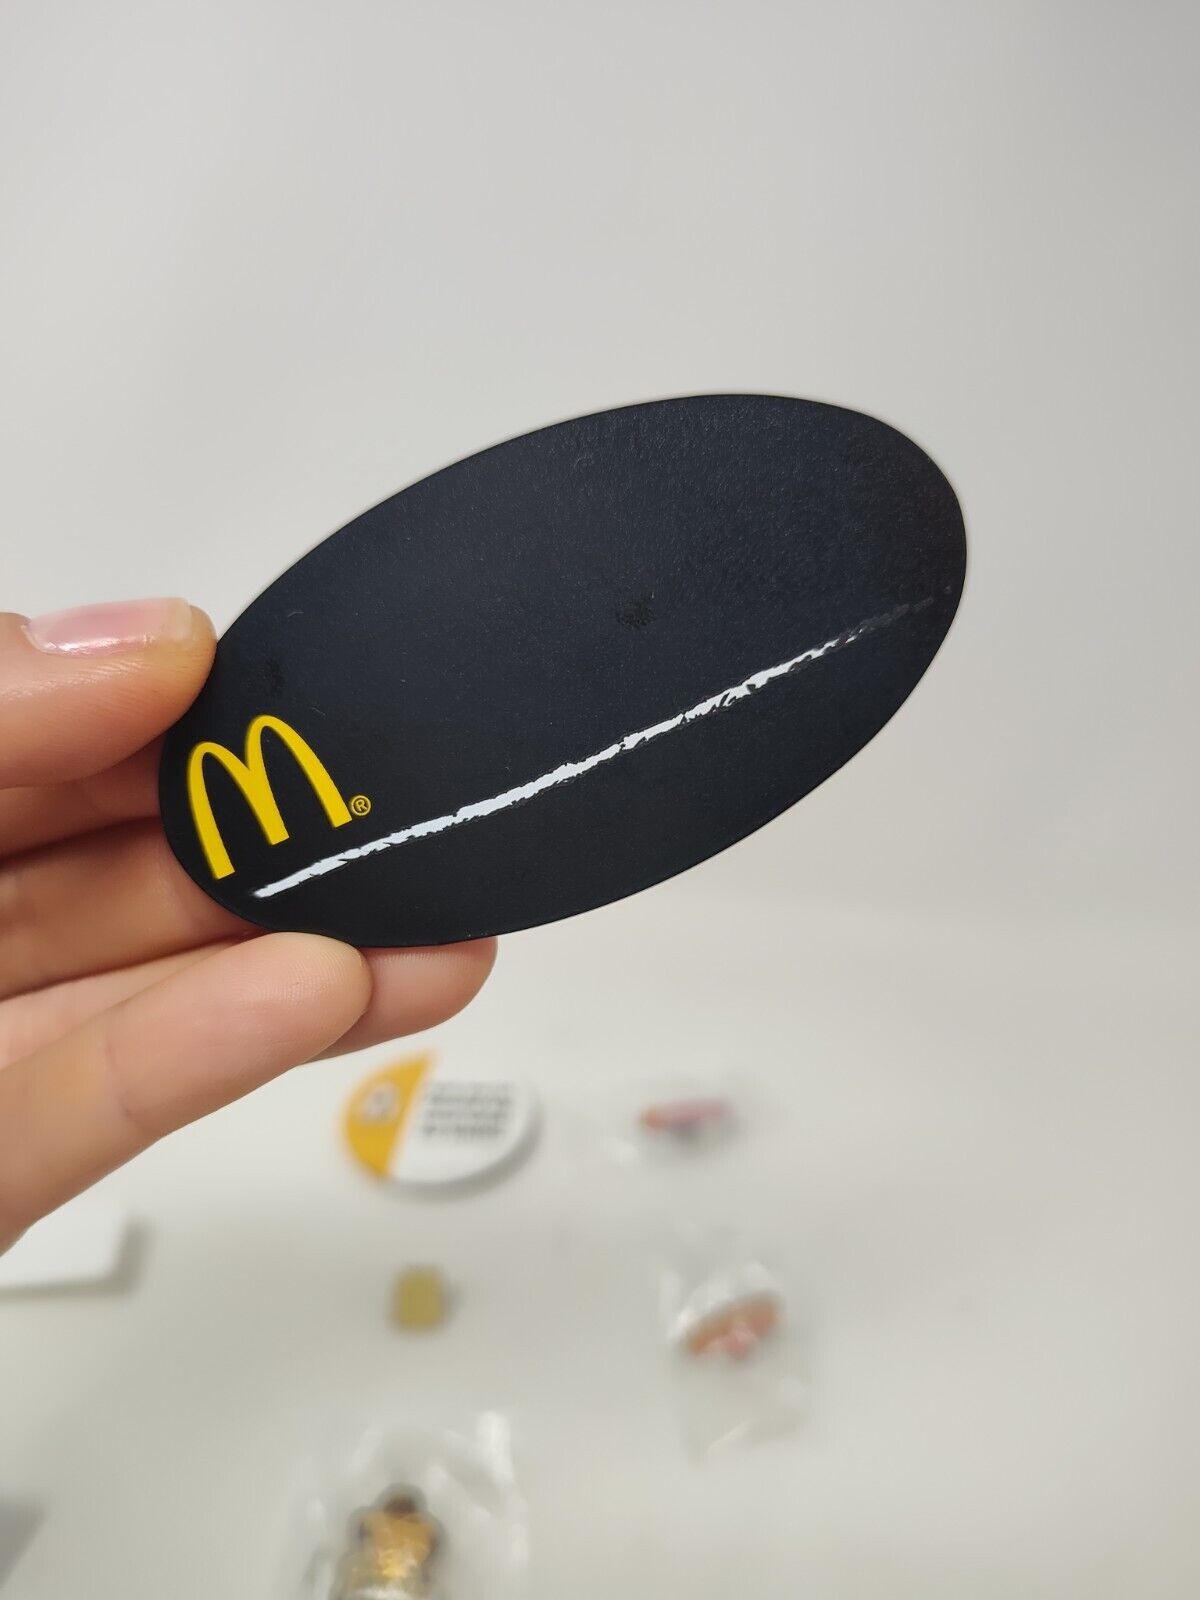 VARIOUS McDonald's Employee Pins - You Choose